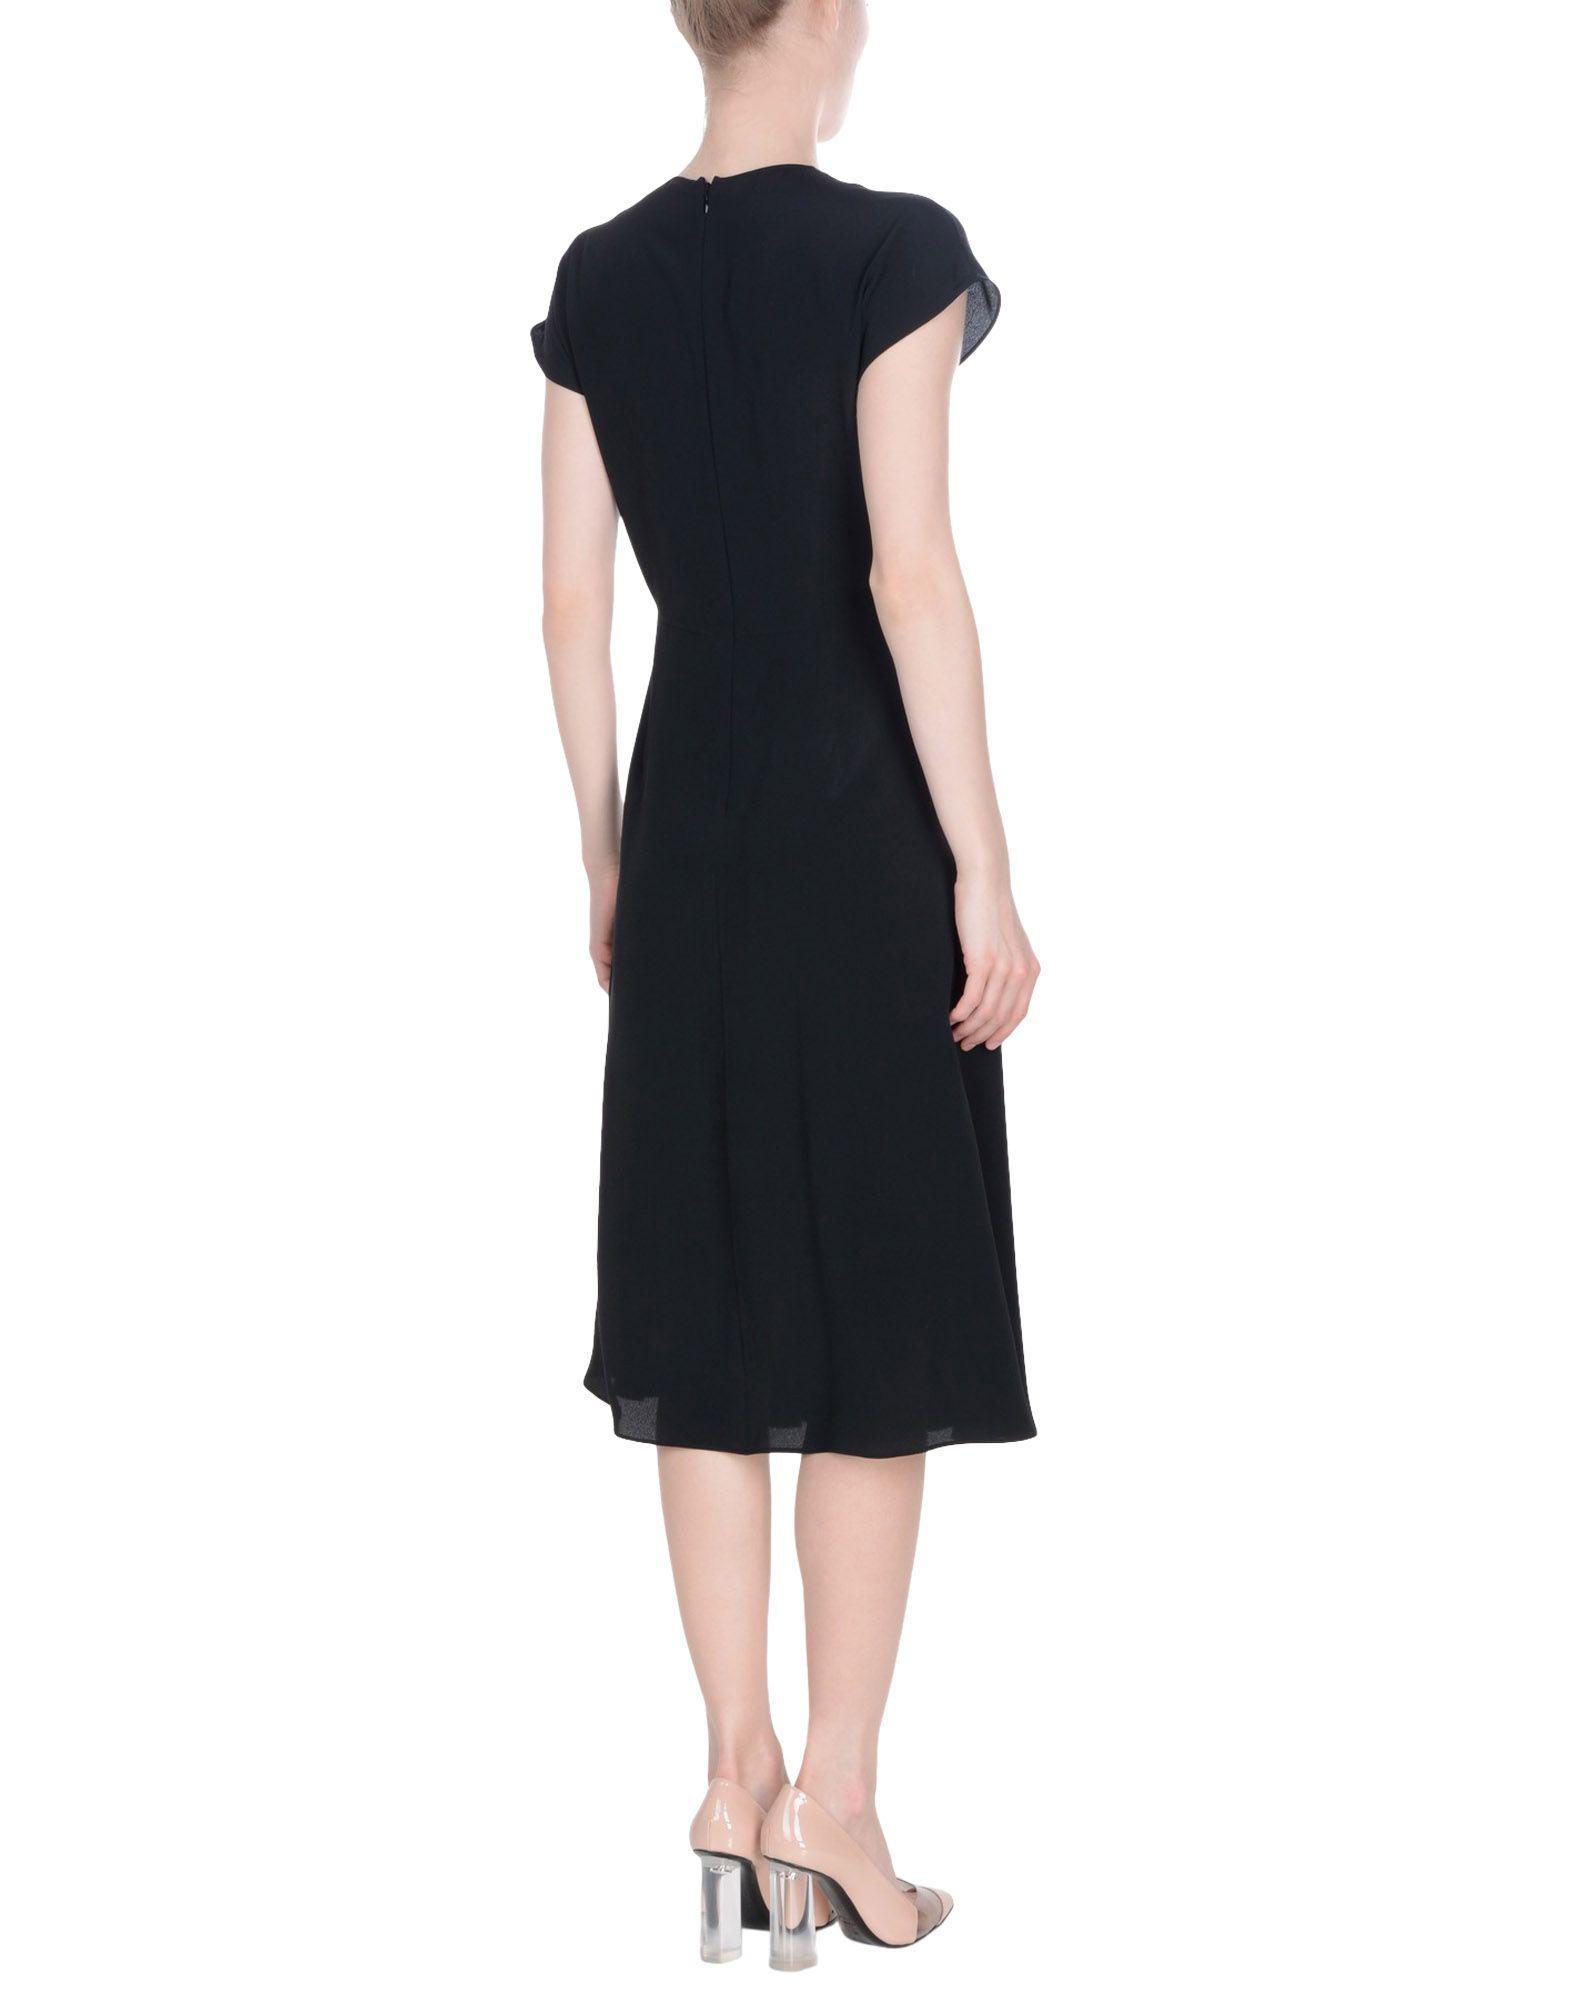 N°21 Silk Knee-length Dress in Black - Lyst